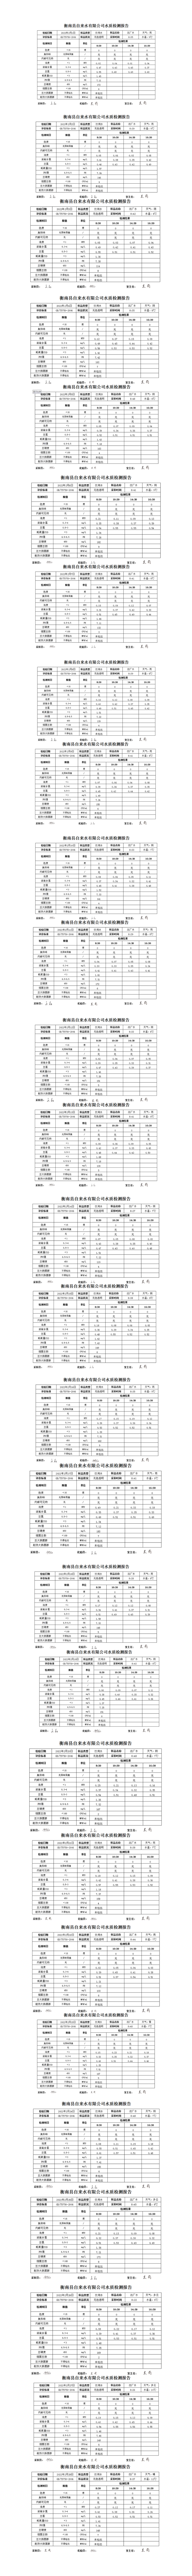 衡南县自来水有限公司2021年2月水质检测报告_01.png